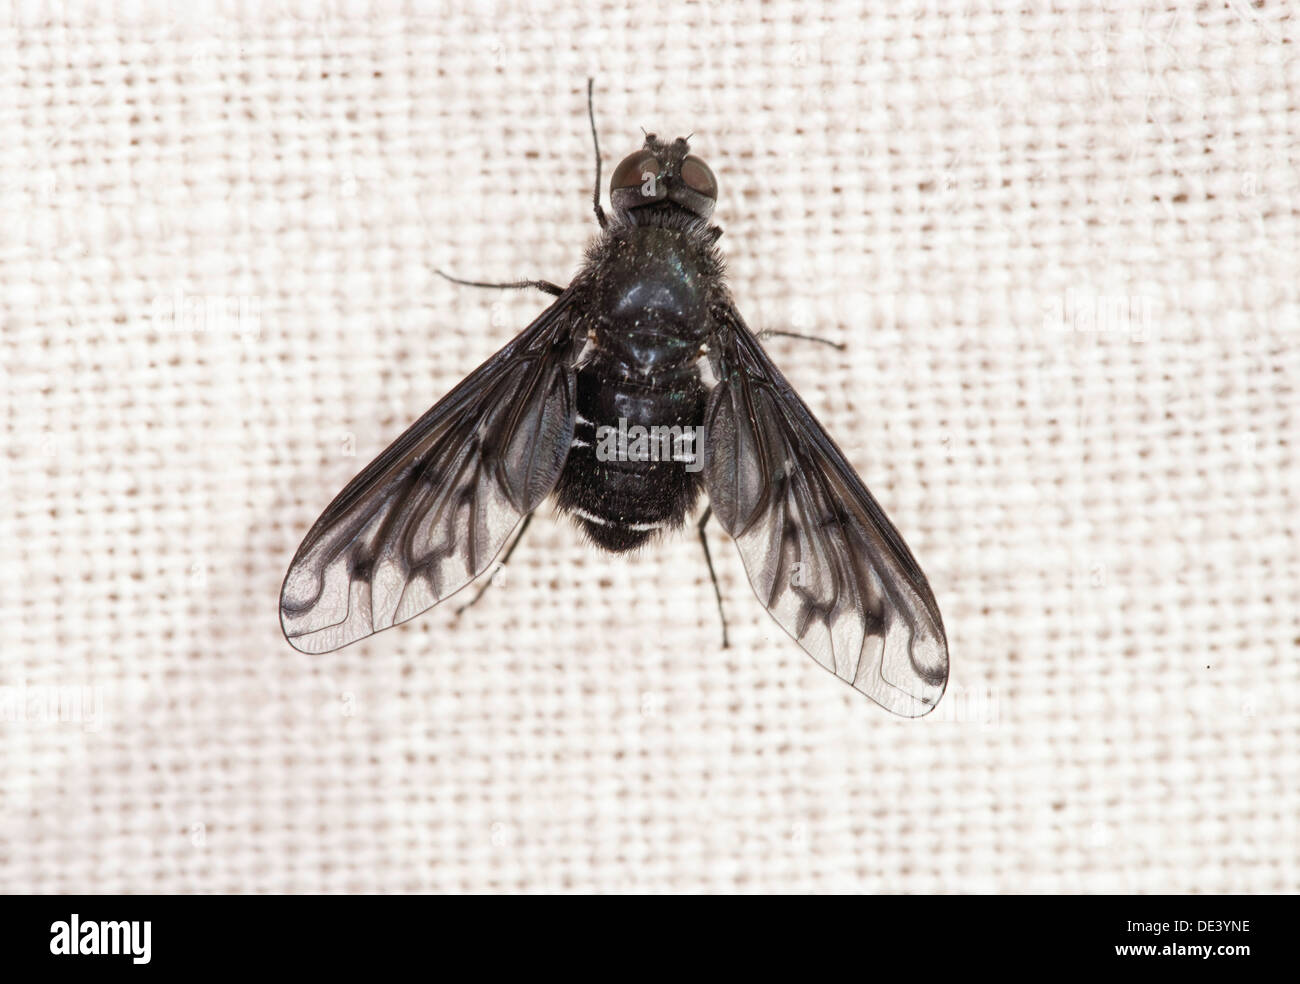 Mouche d'abeille (Hemipenthes morio) sur une feuille Photo Stock - Alamy